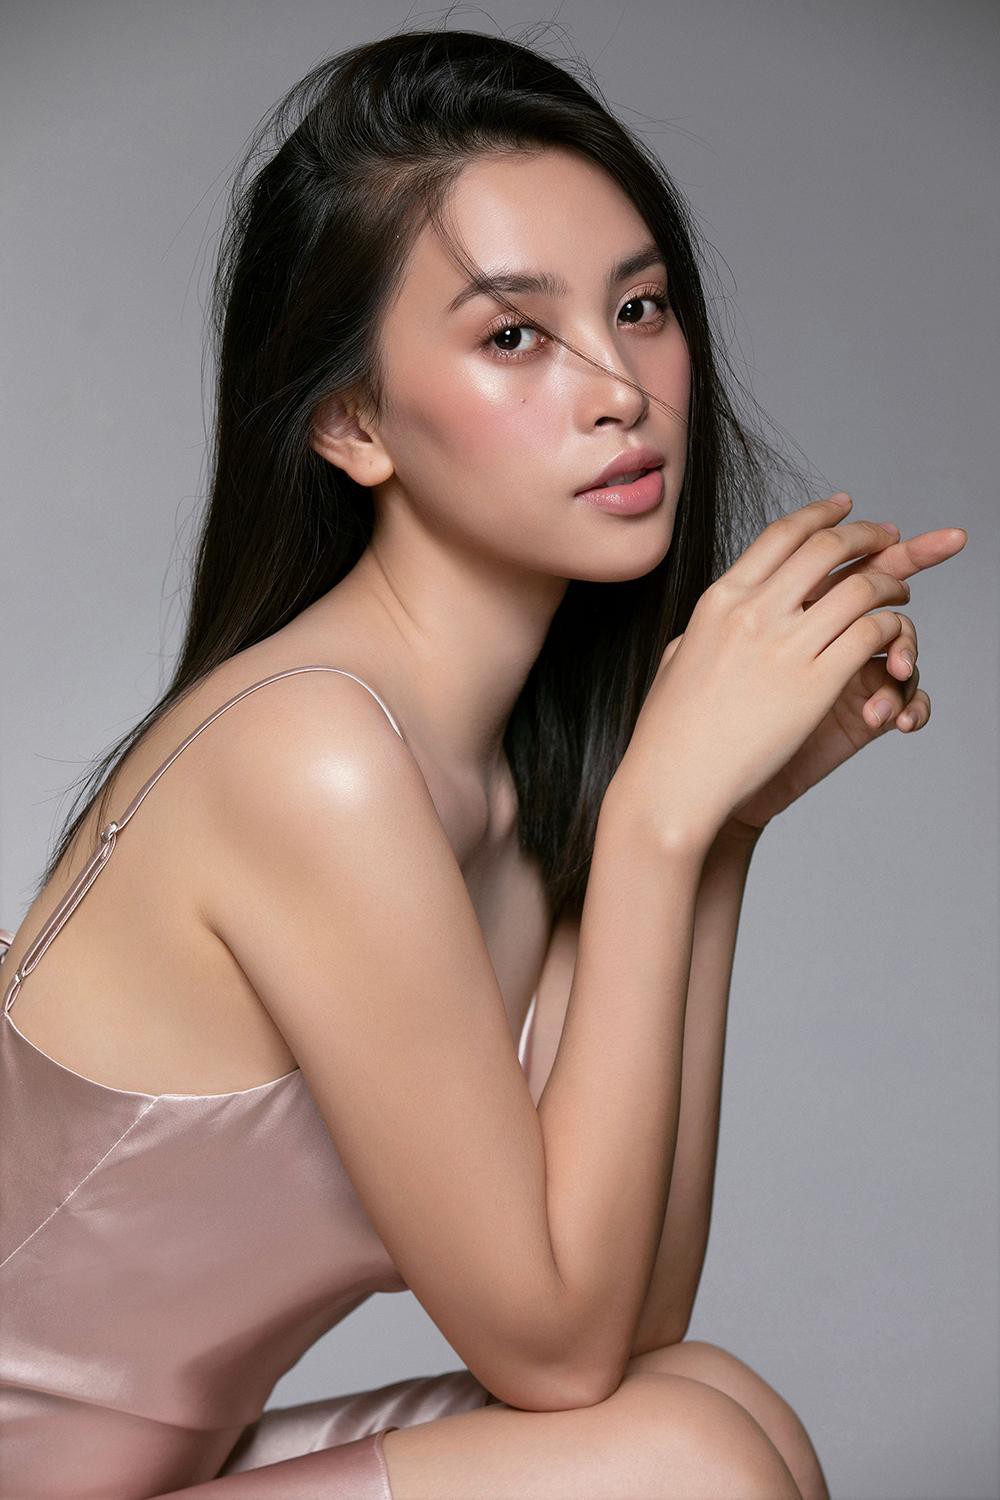 Trang điểm trong veo, Hoa hậu Tiểu Vy vẫn đẹp hút hồn với gương mặt đạt 'tỷ lệ vàng' - Ảnh 9.